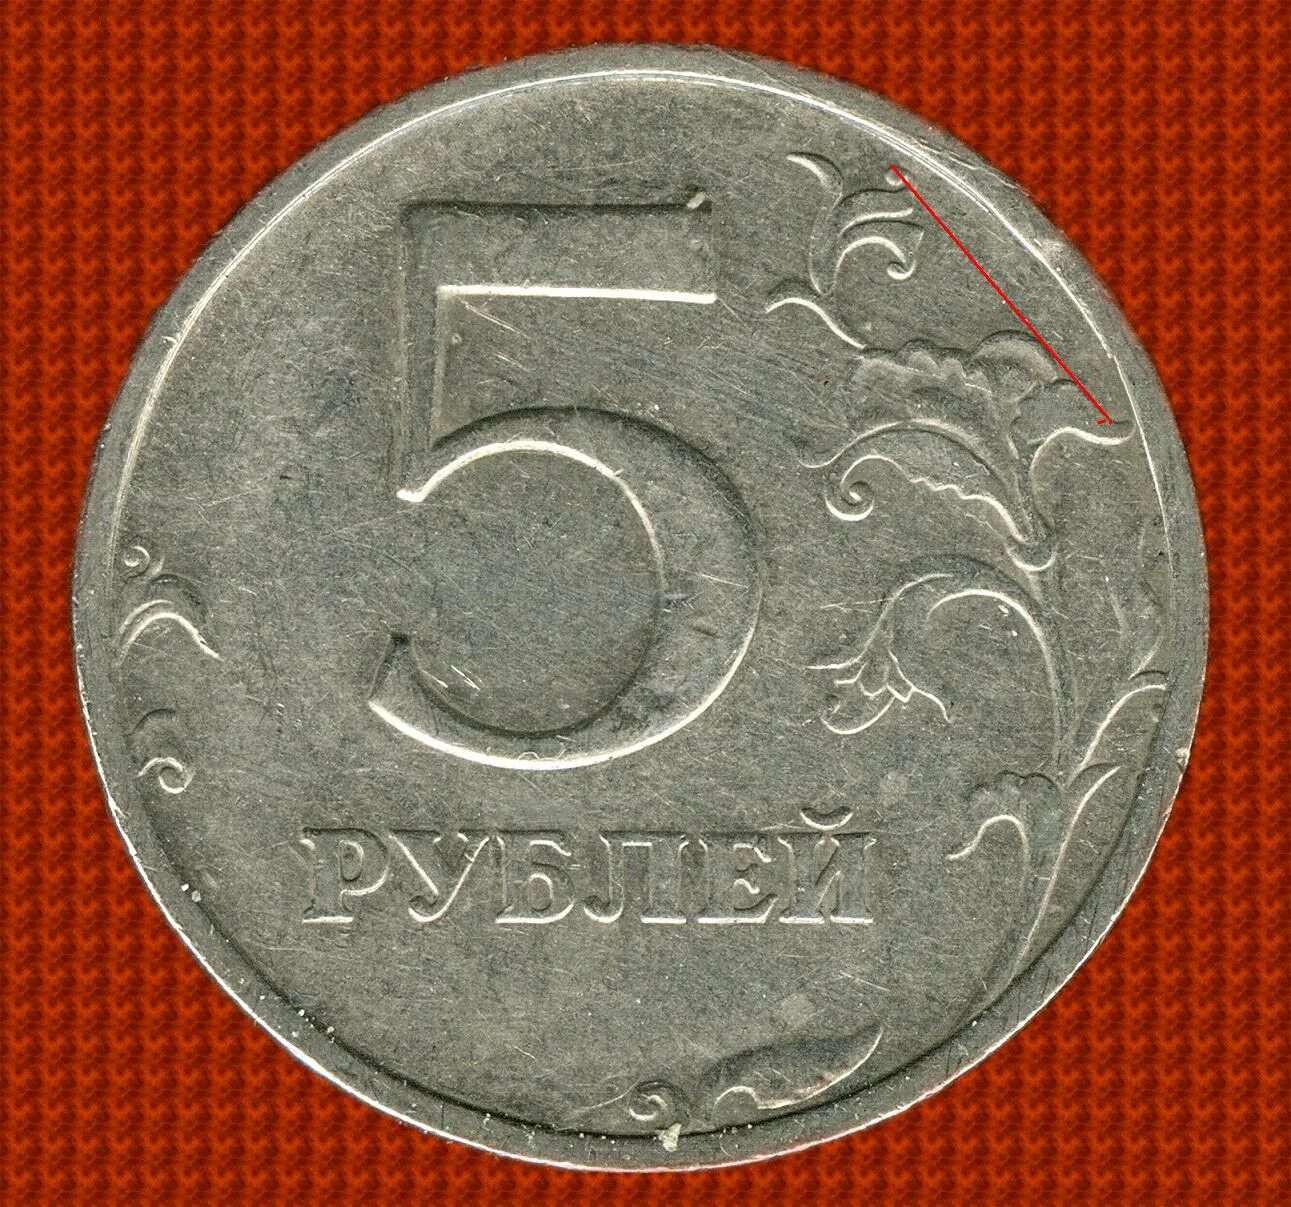 5 рублей плюс 5 рублей. 5 Рублей 1998 ММД. 5 Рублей 1998 СПМД. 5 Рублей 1998 Московский монетный двор. Пять рублей.